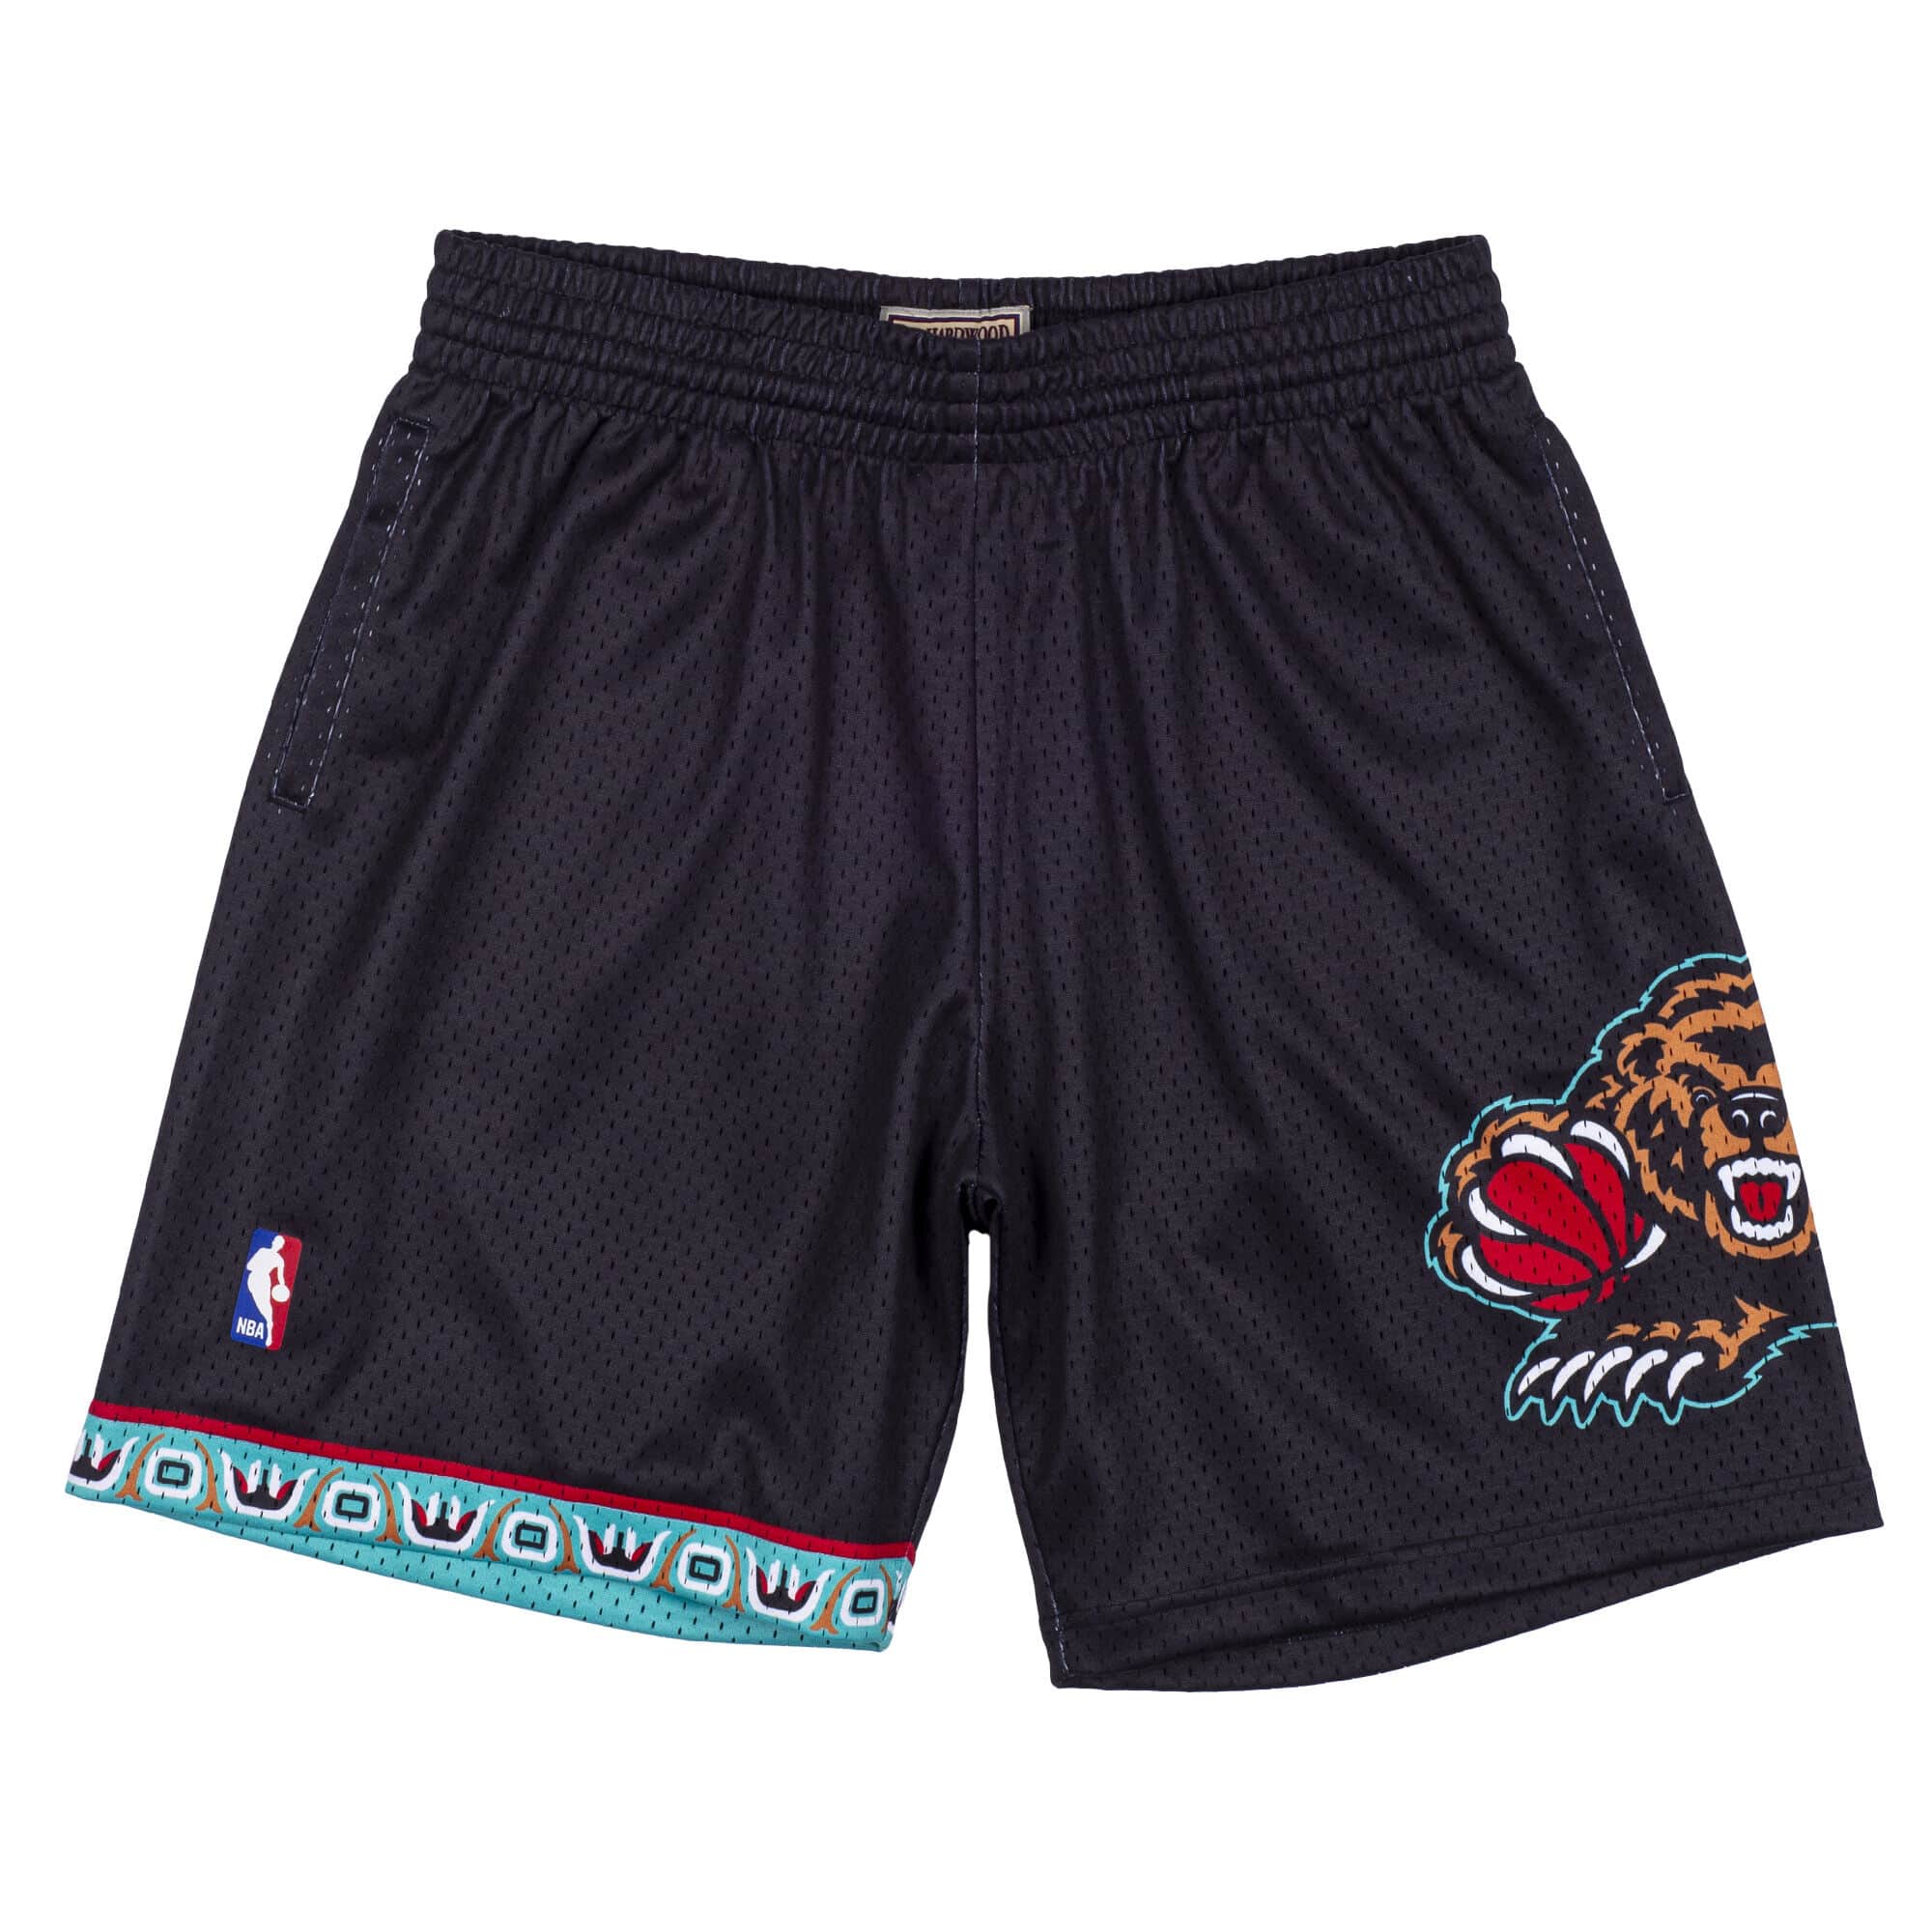 NBA Memphis Grizzlies Vancouver Grizzlies Authentic Shorts